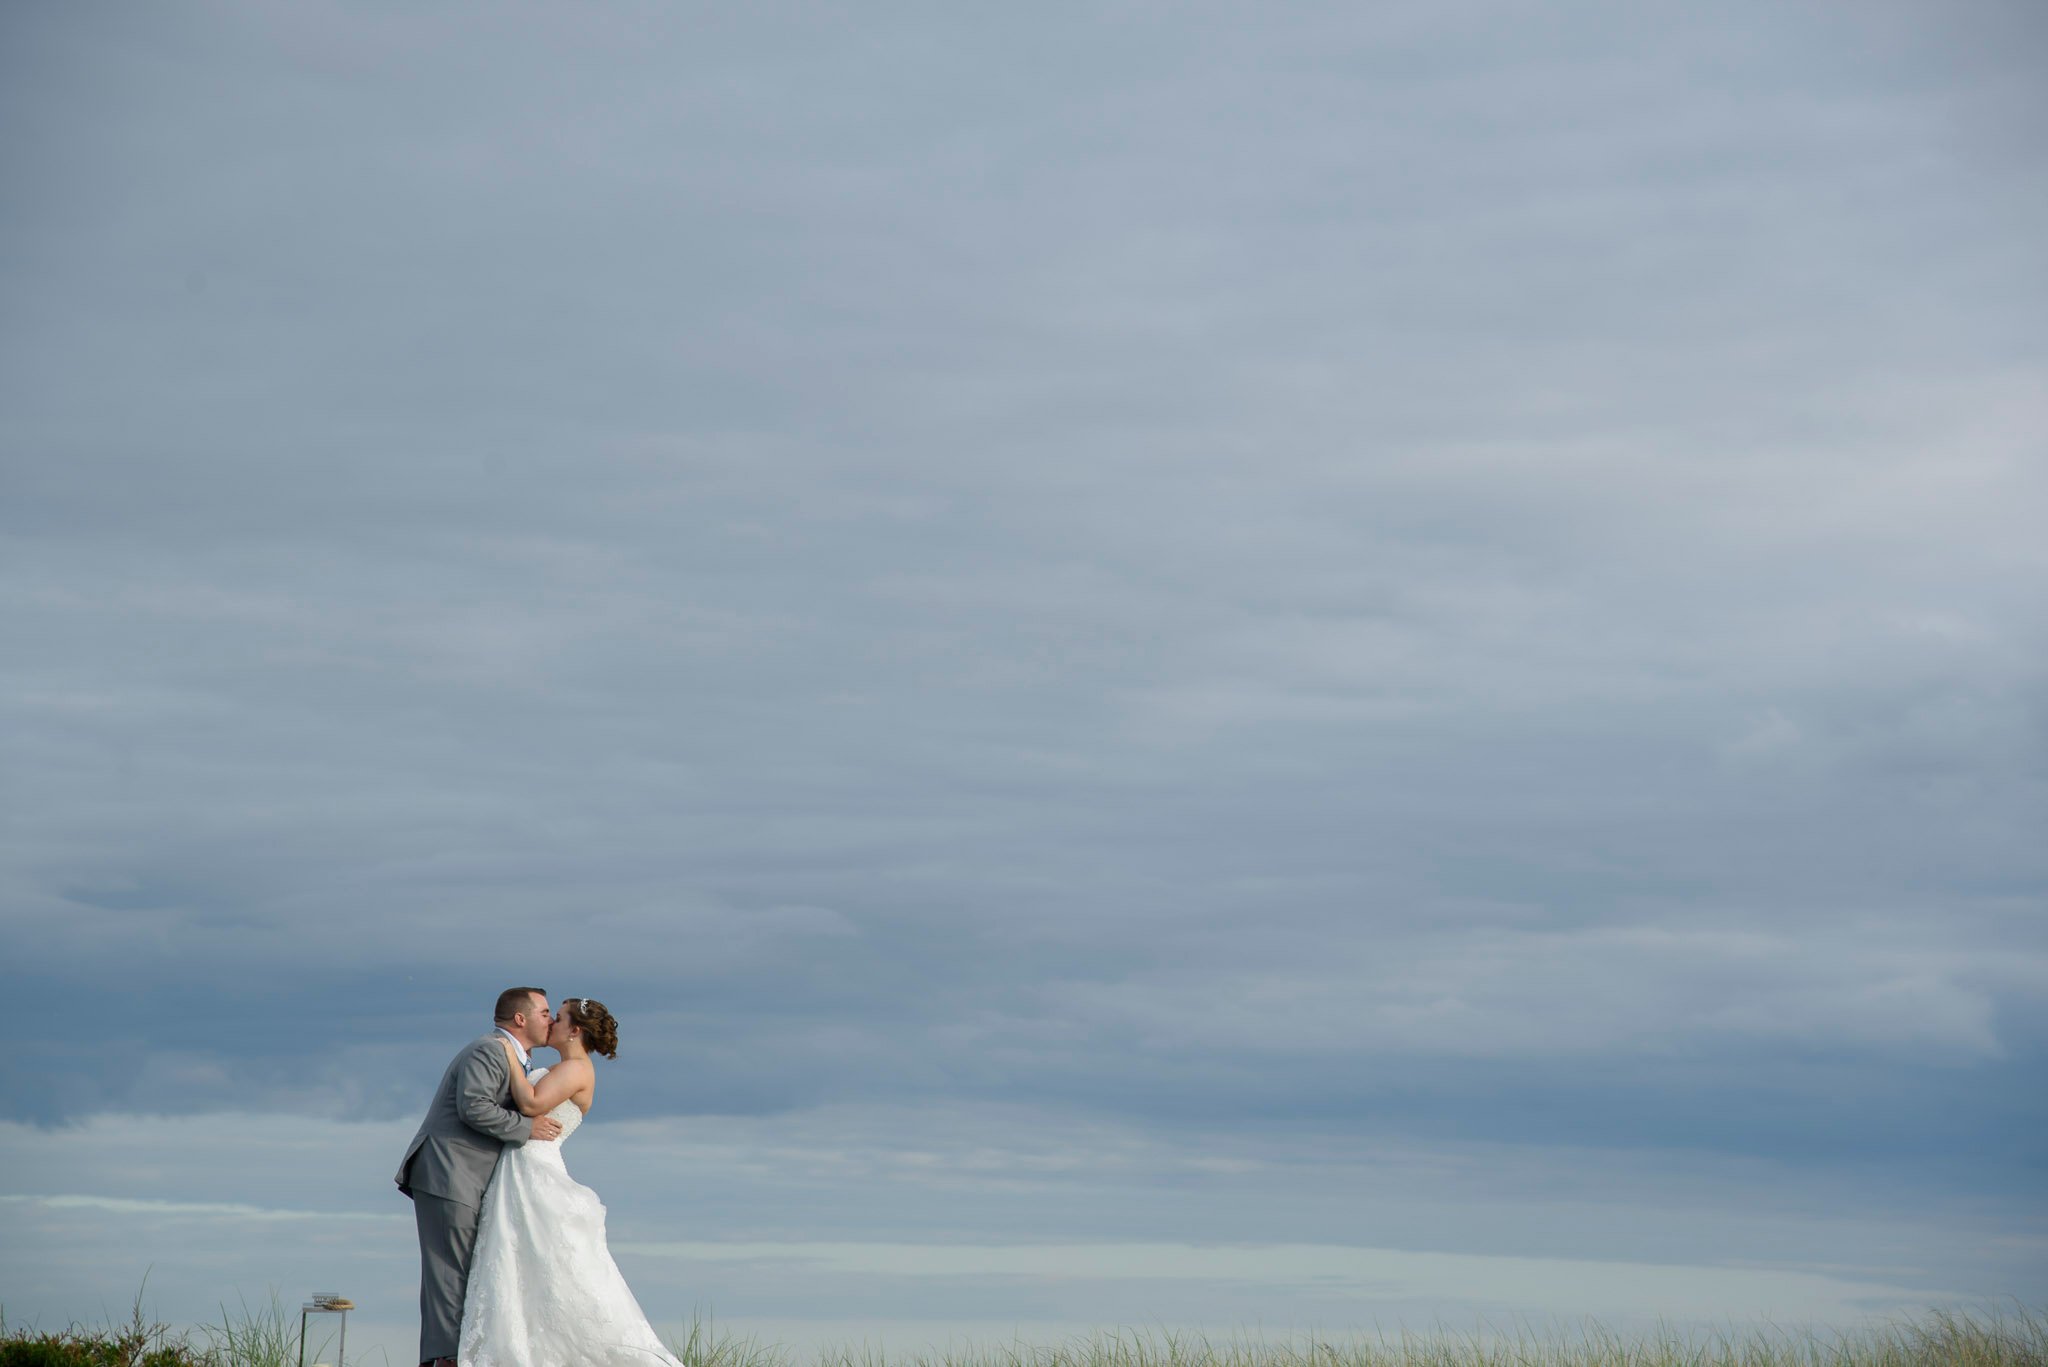 The Best Wedding Photos from Oceanbleu-4